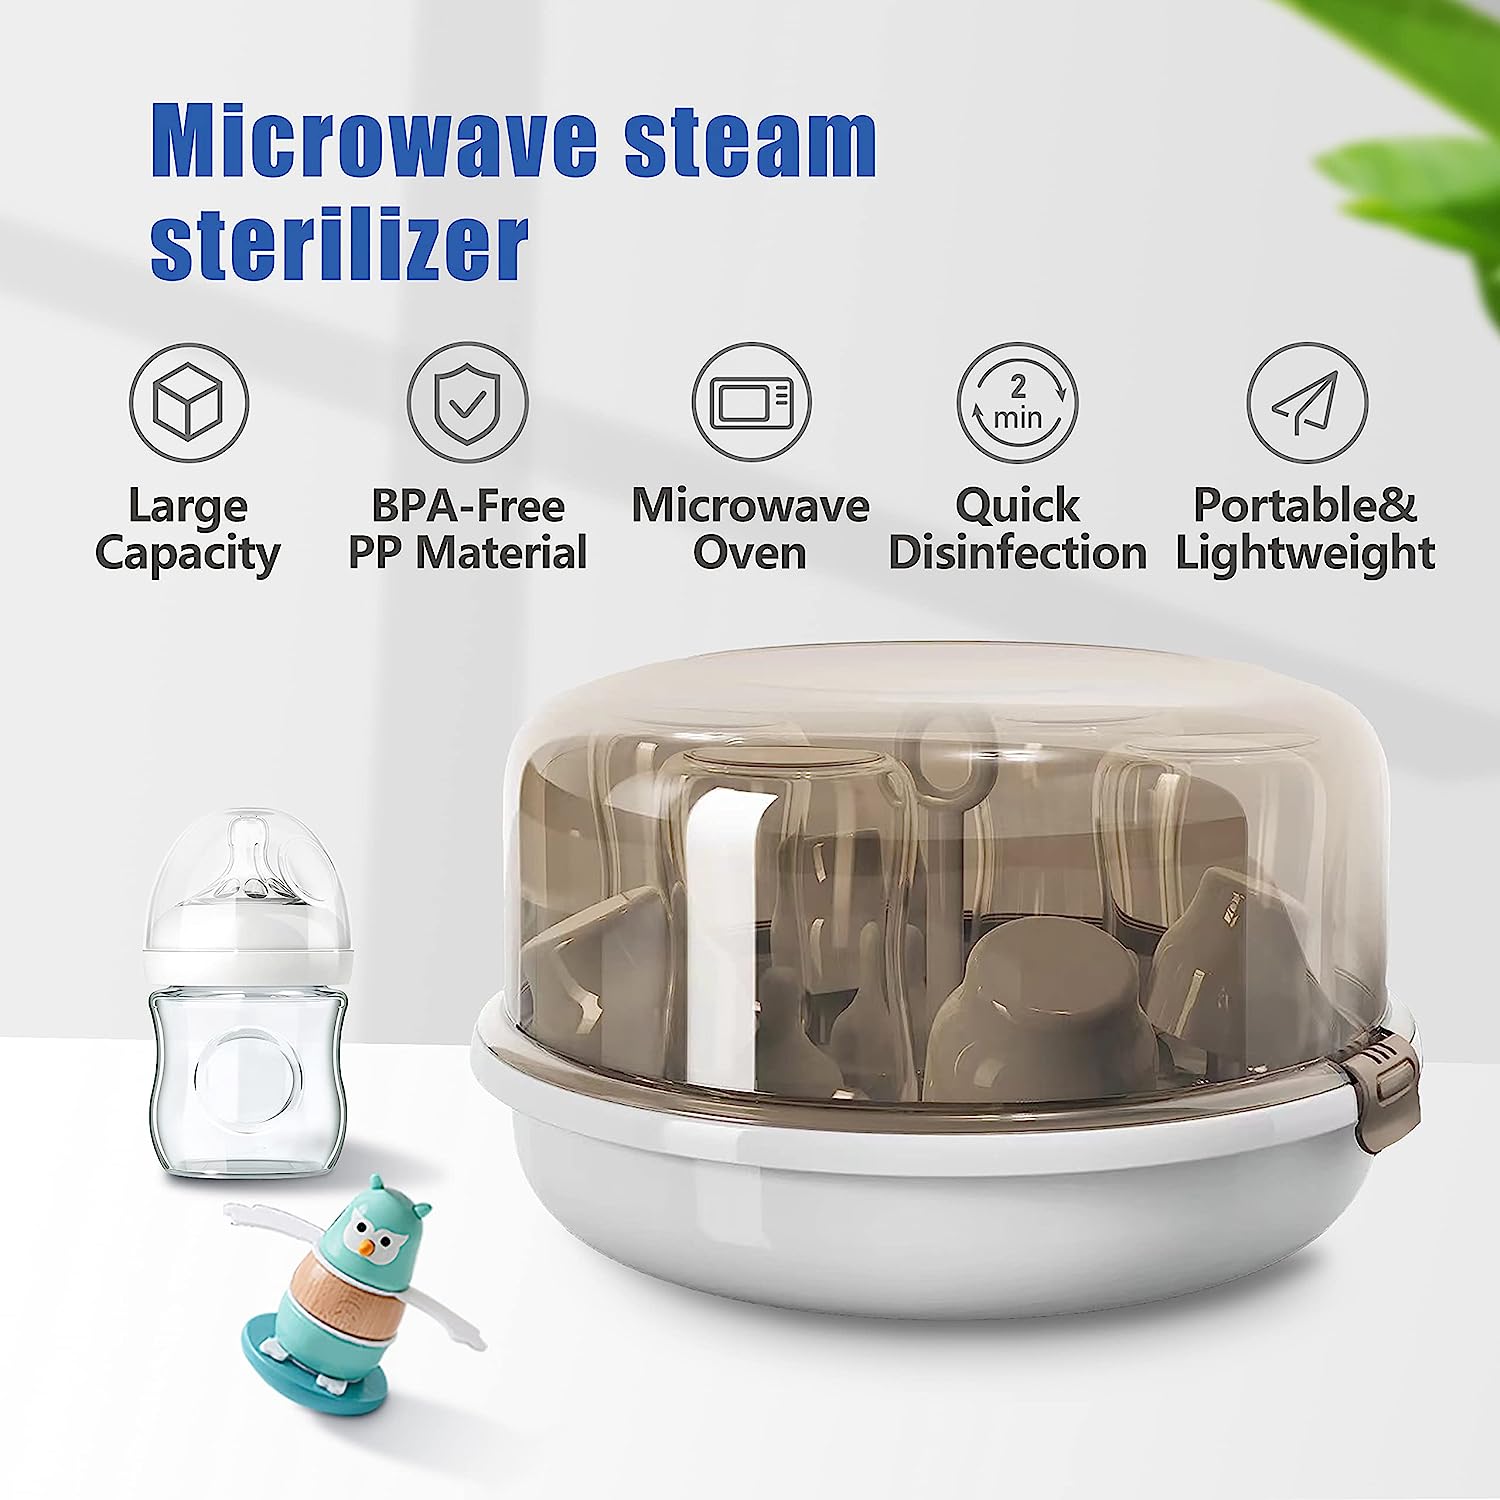 Microwave Steam Sterilizer